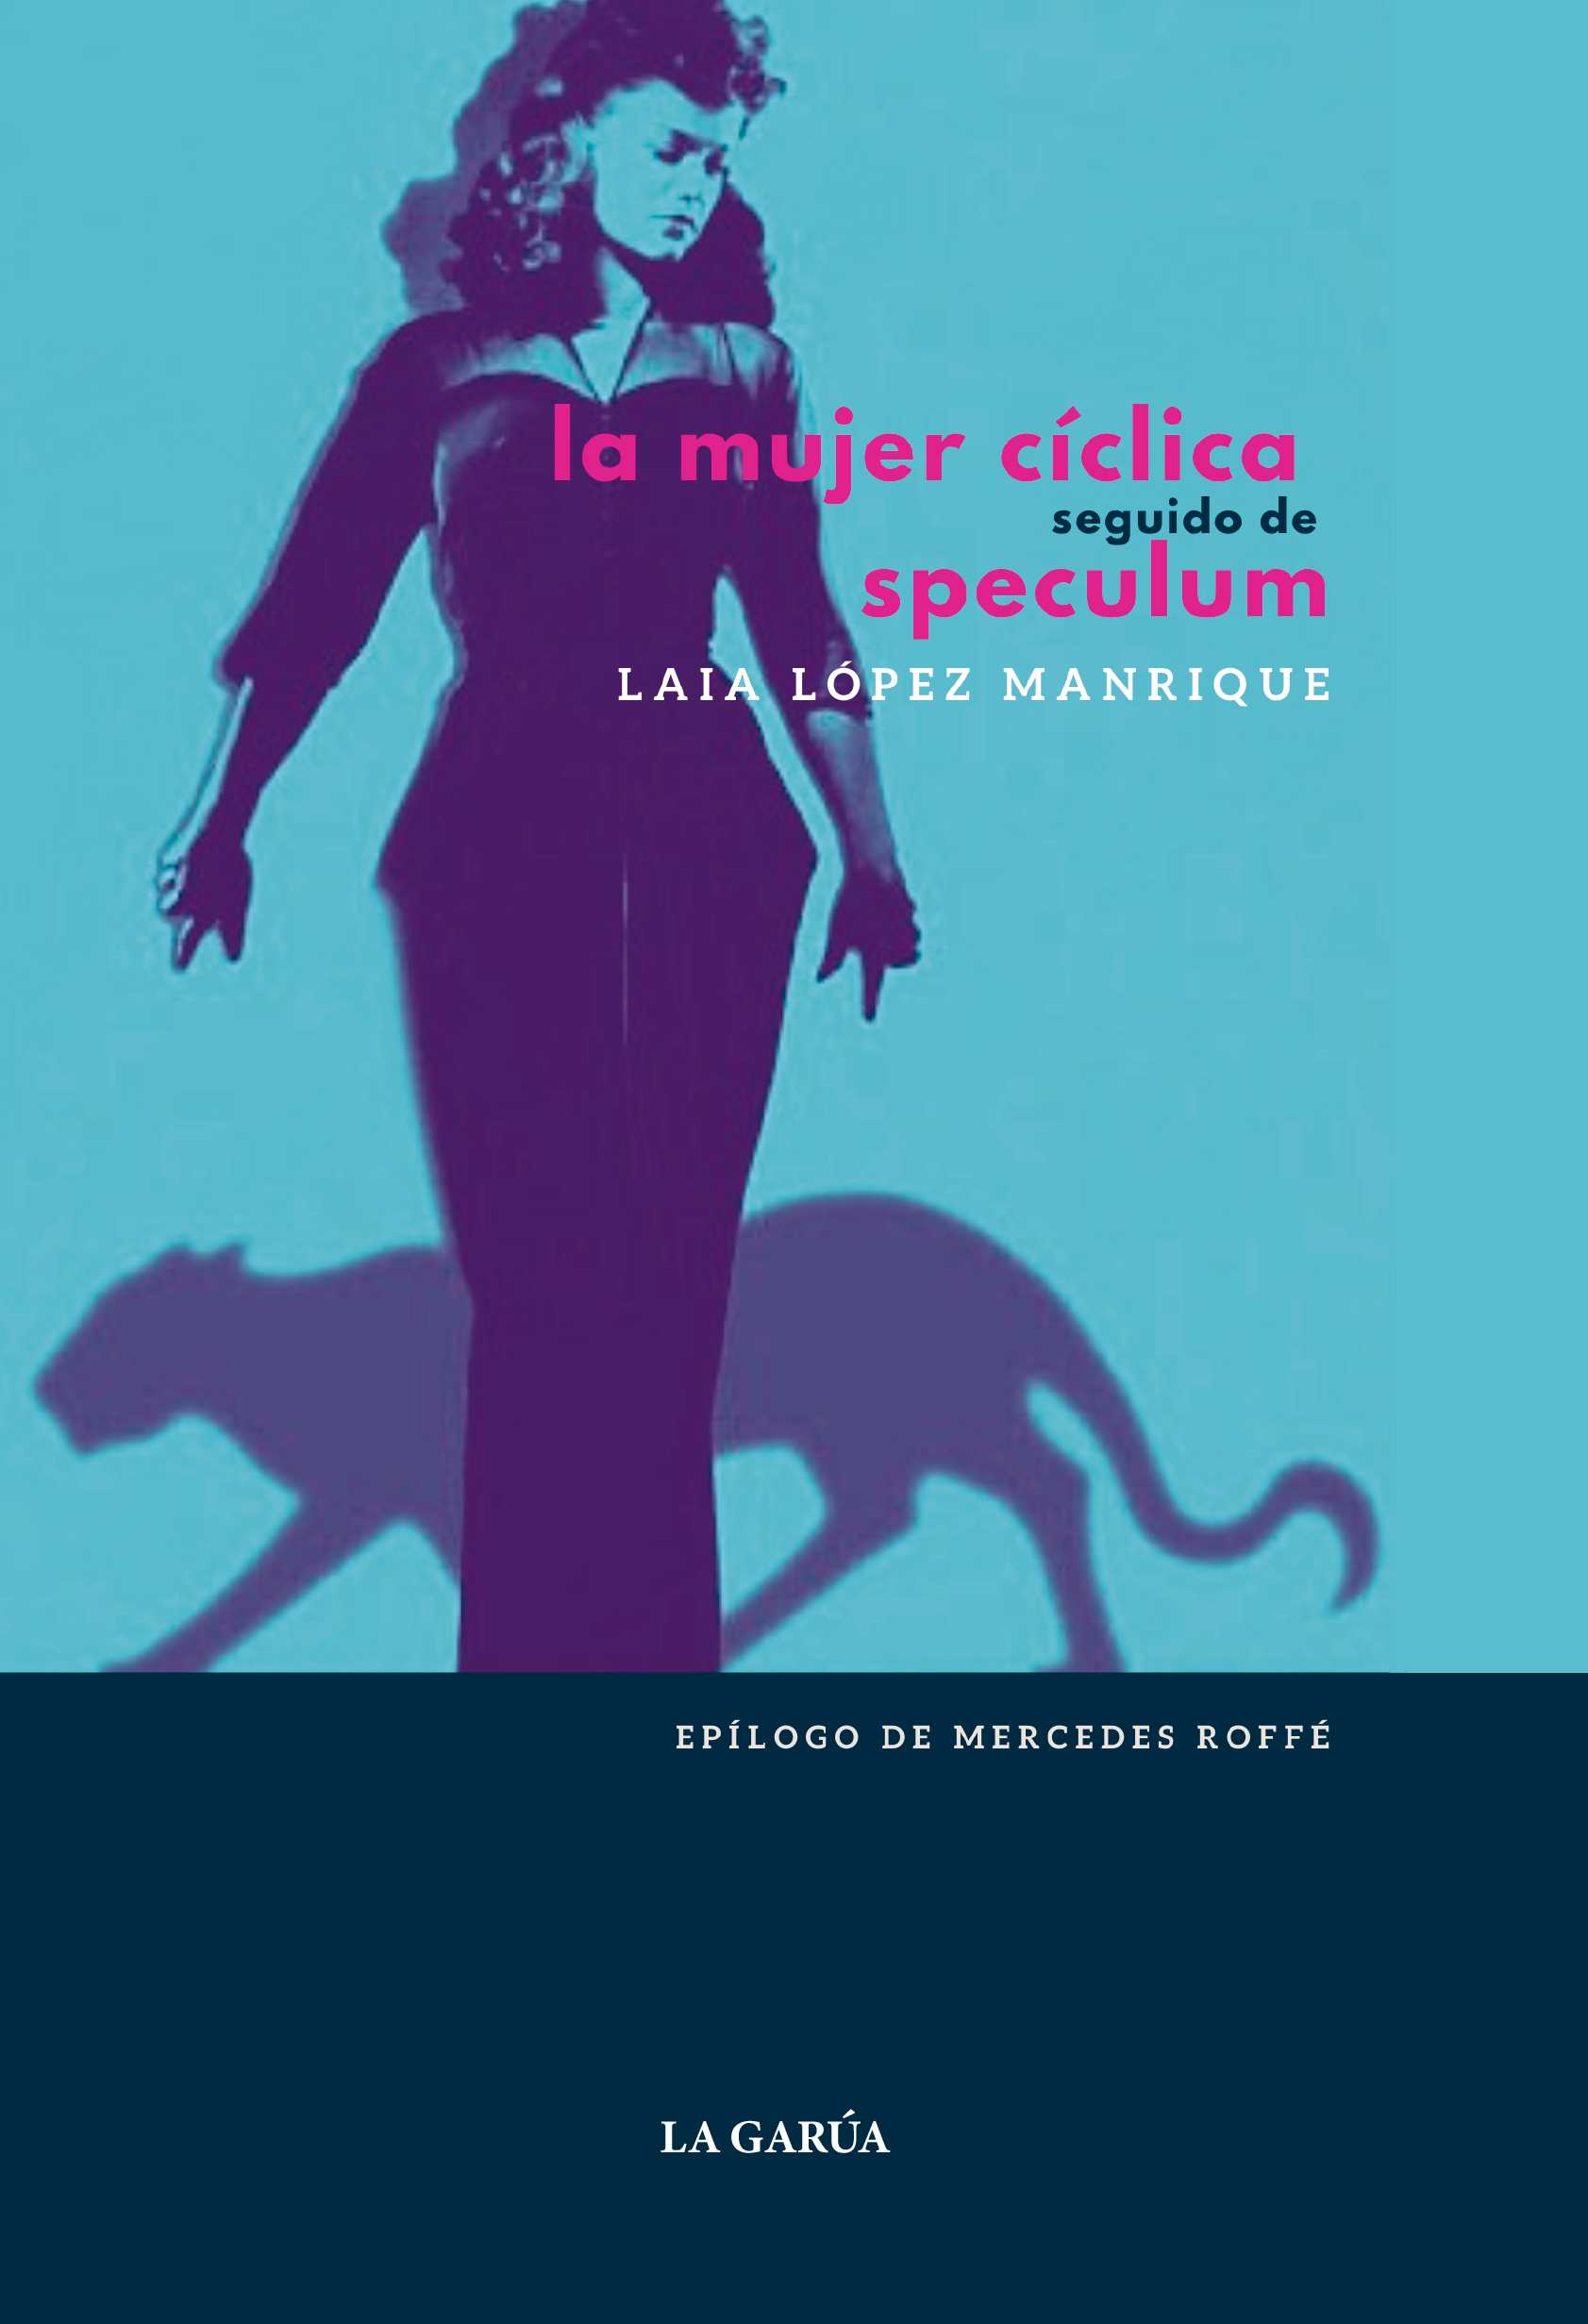 La mujer cíclica | La Garúa Poesía